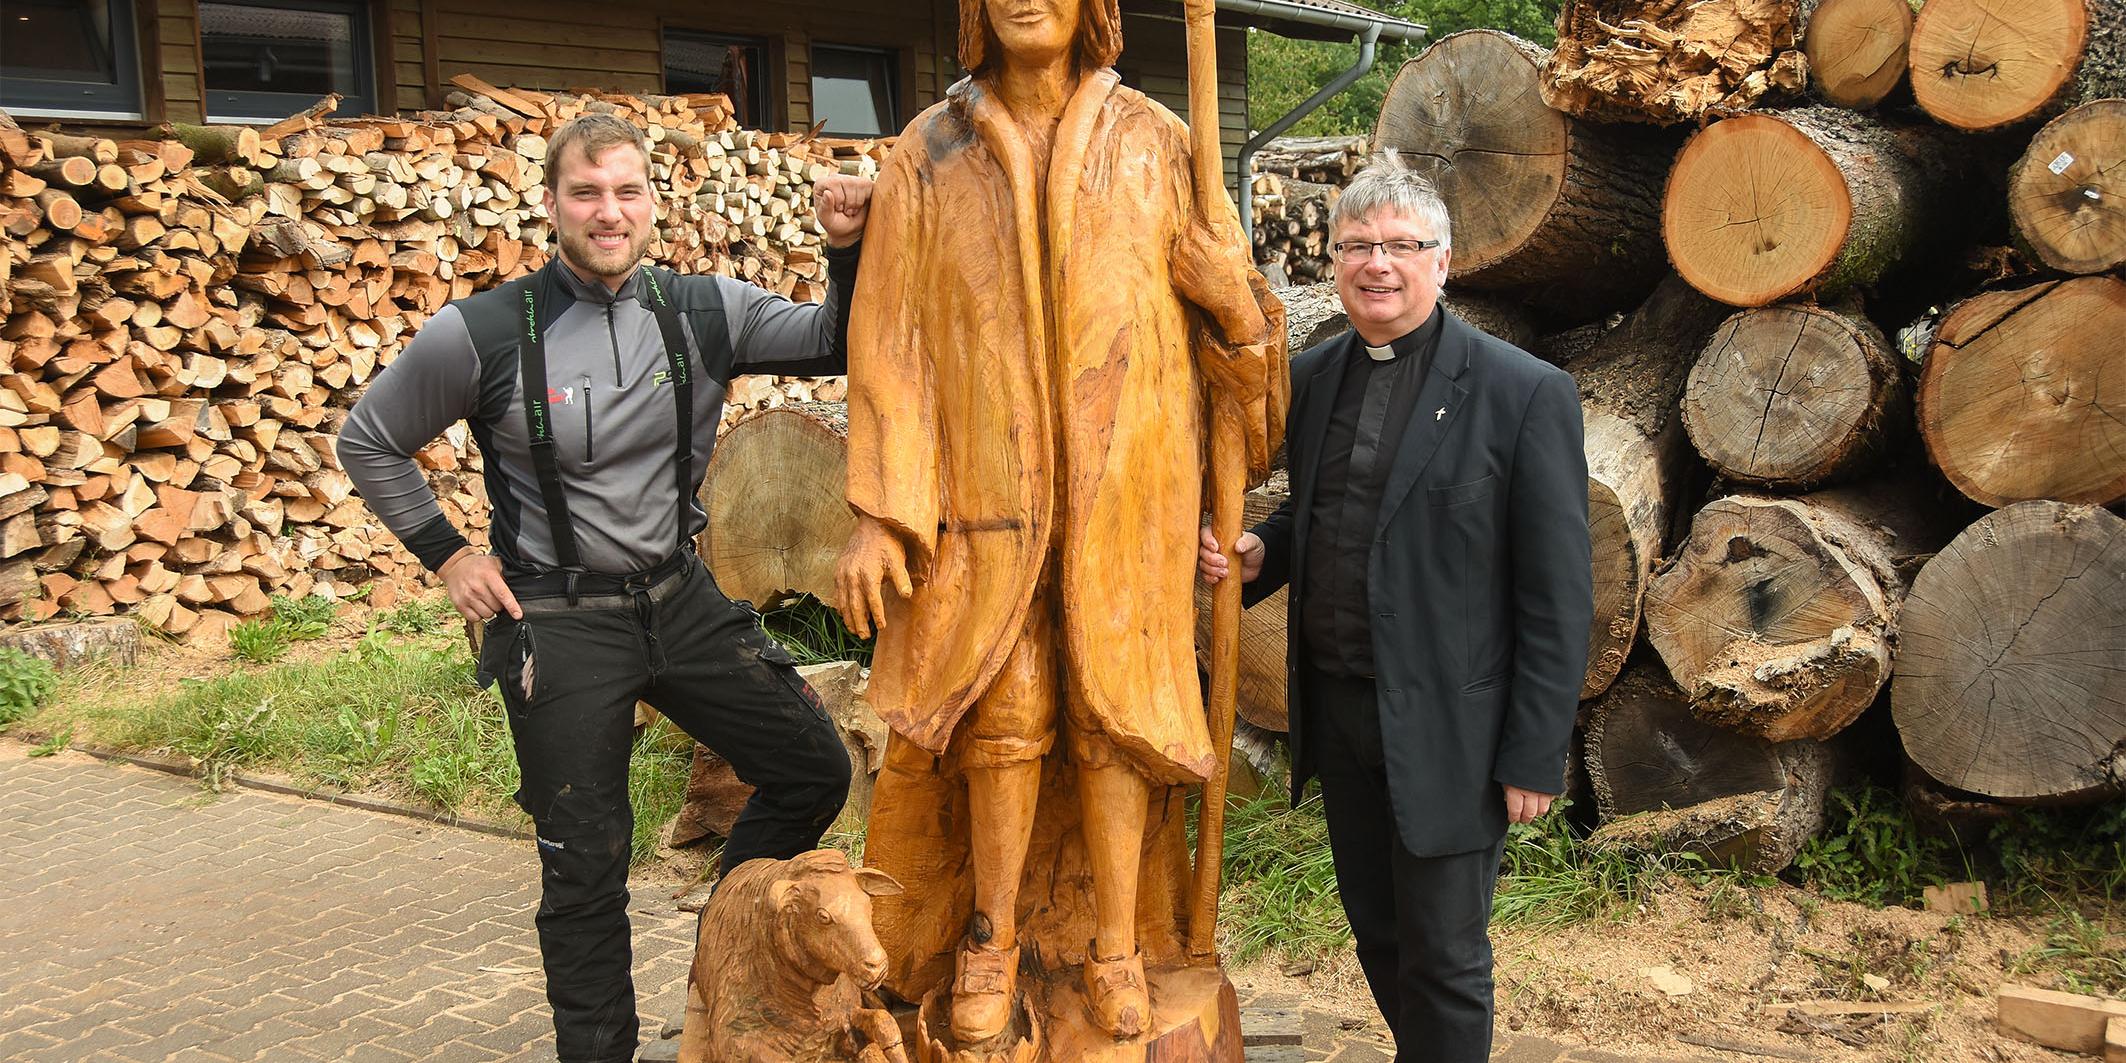 Pfarrer Klaus Leist besucht zum ersten Mal die fertige Wendelinus-Statue am Sägewerk in Bliesen